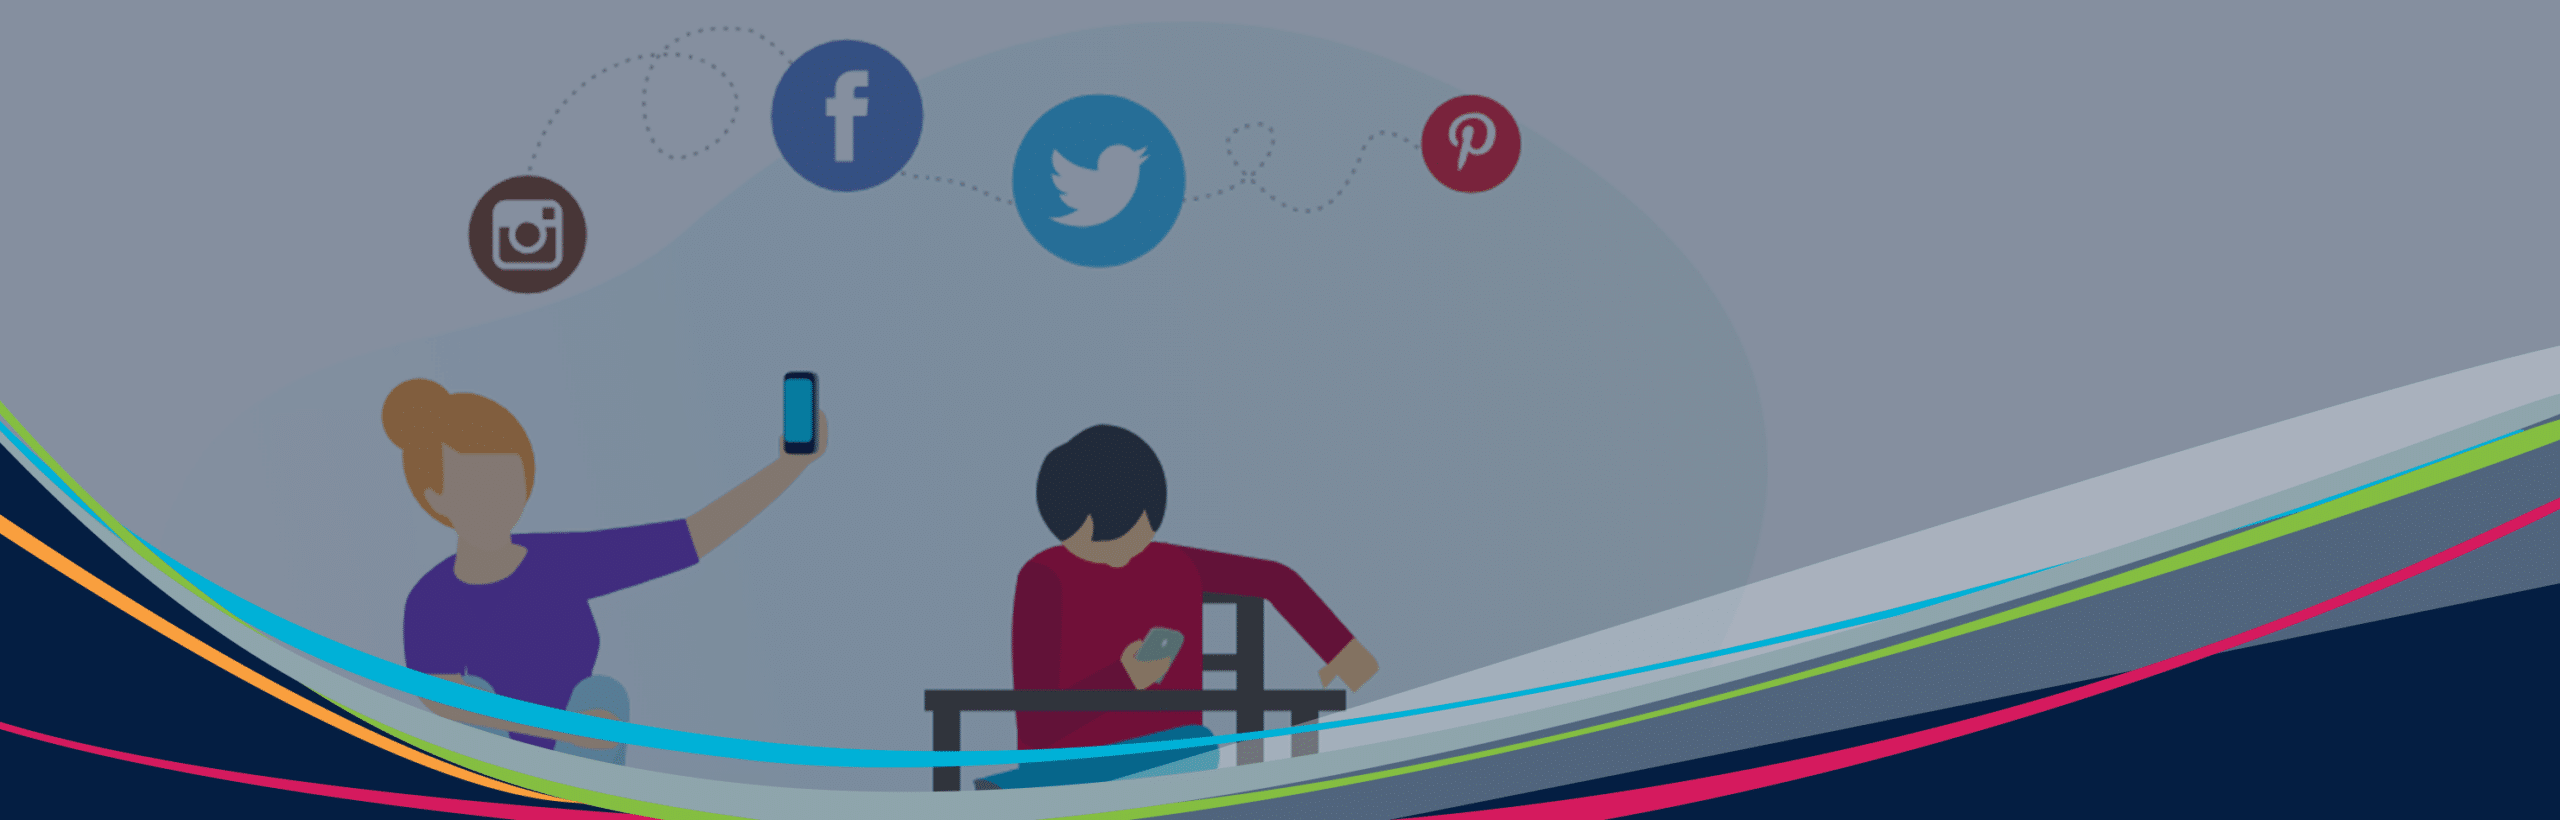 Gráfico ilustrado de héroe de estudiantes con dispositivos e íconos de redes sociales flotando en el fondo